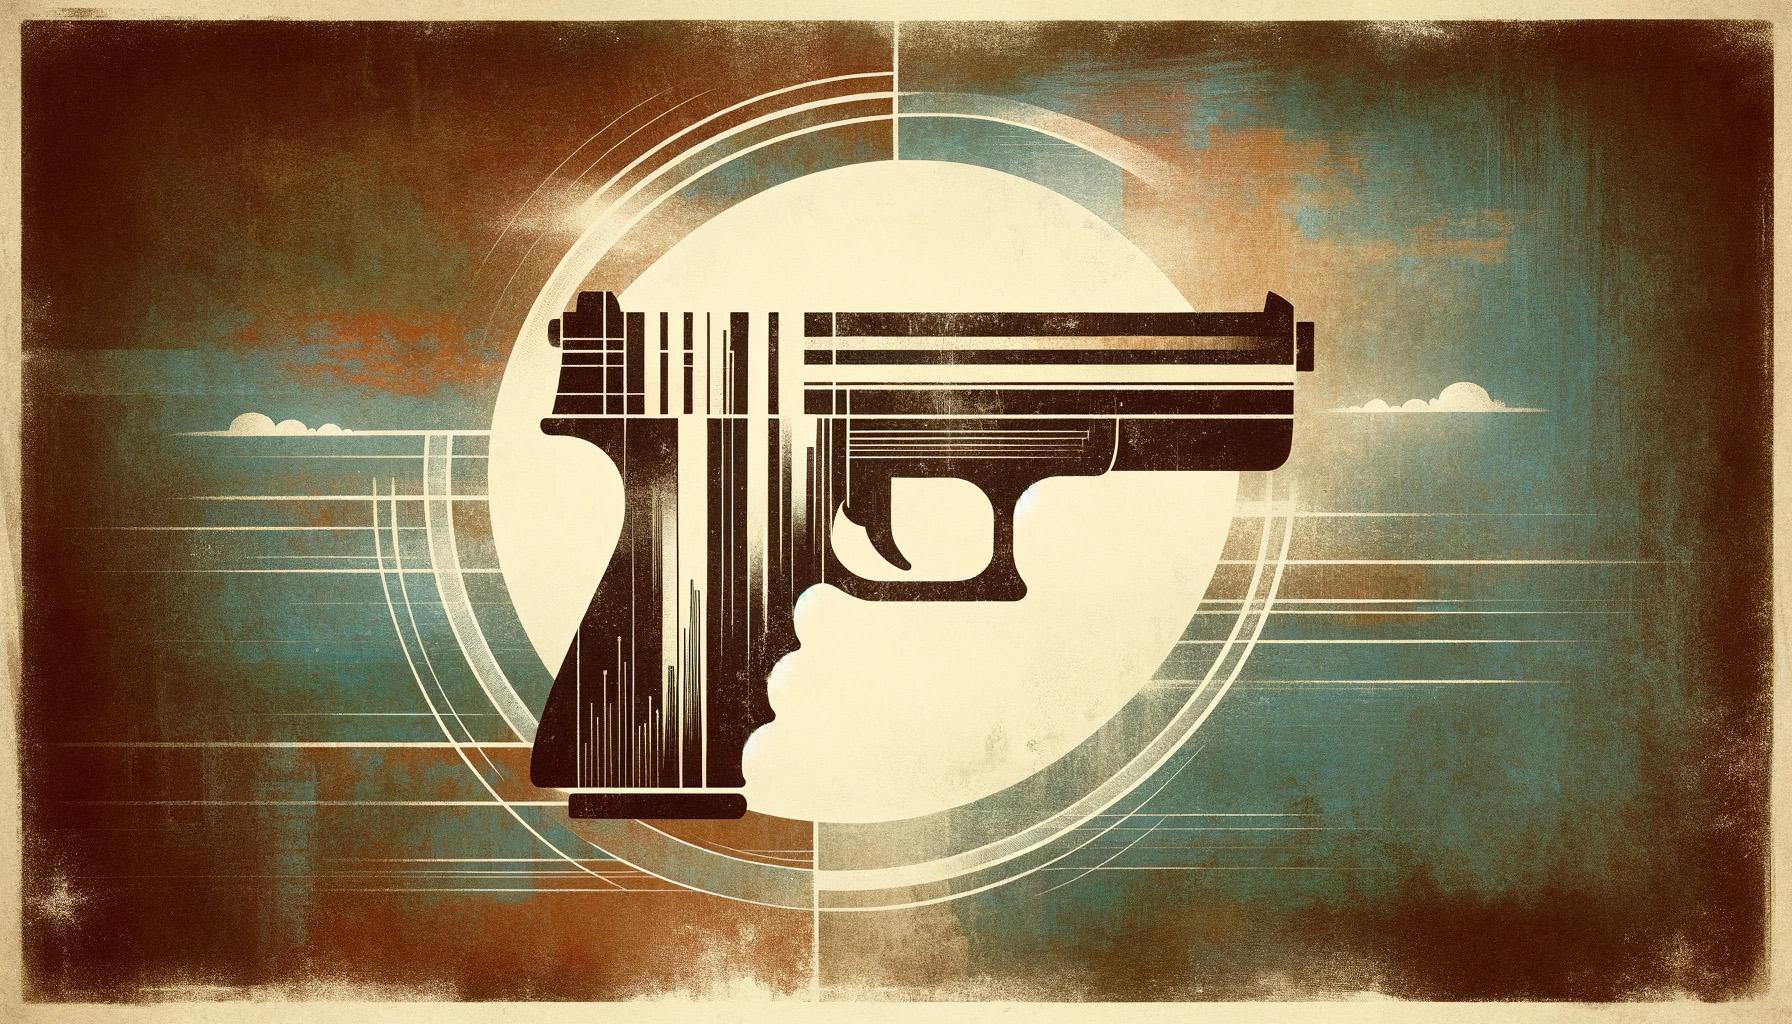 Handgun or pistol or weapon news graphic